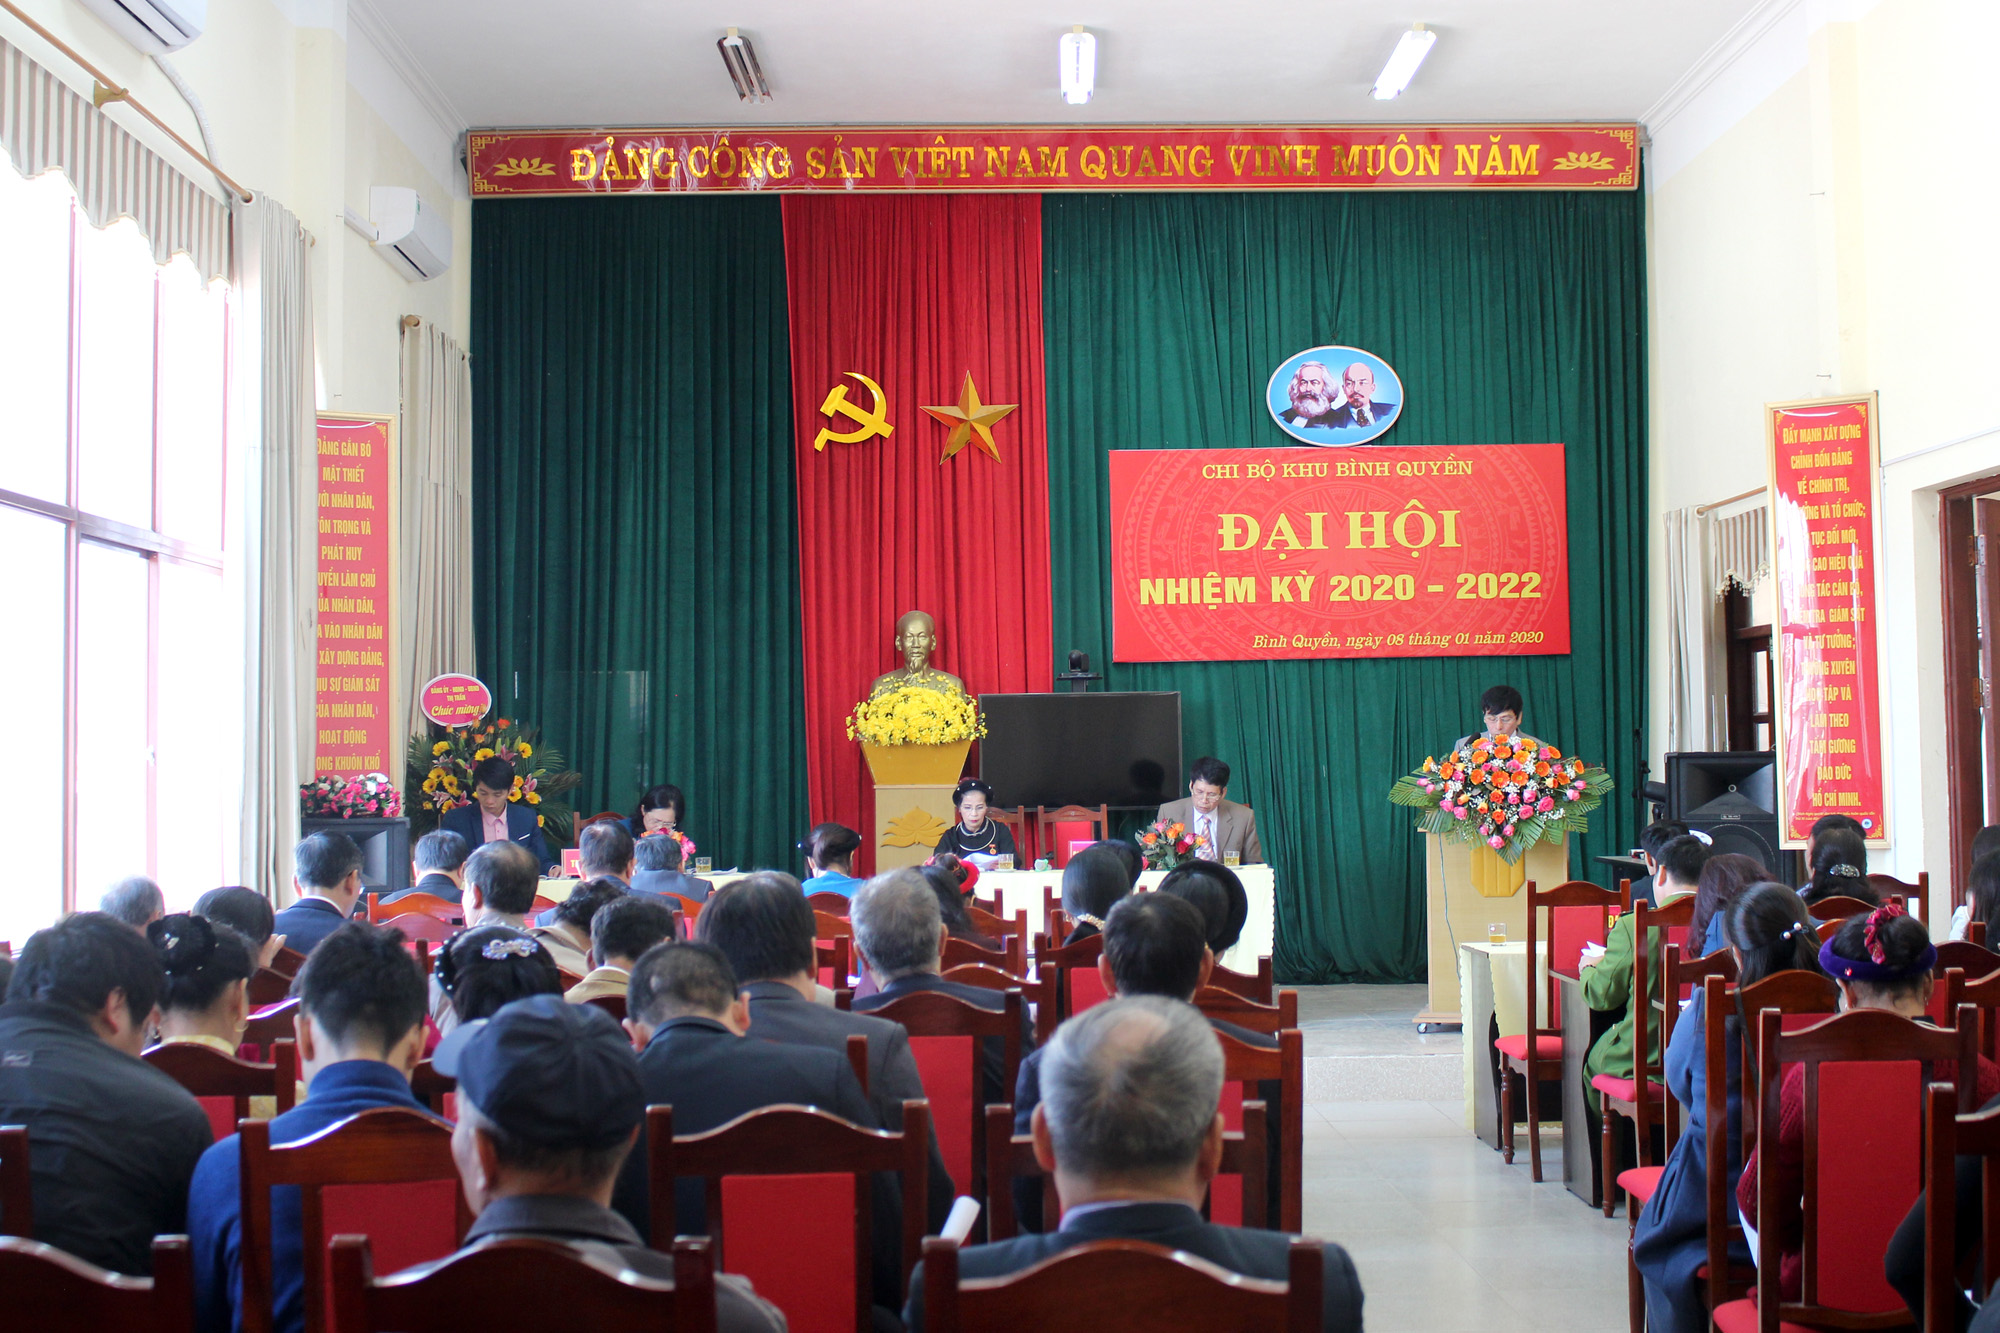 Đại hội chi bộ khu Bình Quyền - đại hội điểm của Đảng bộ thị trấn Bình Liêu (huyện Bình Liêu) diễn ra vào ngày 8/1/2020.